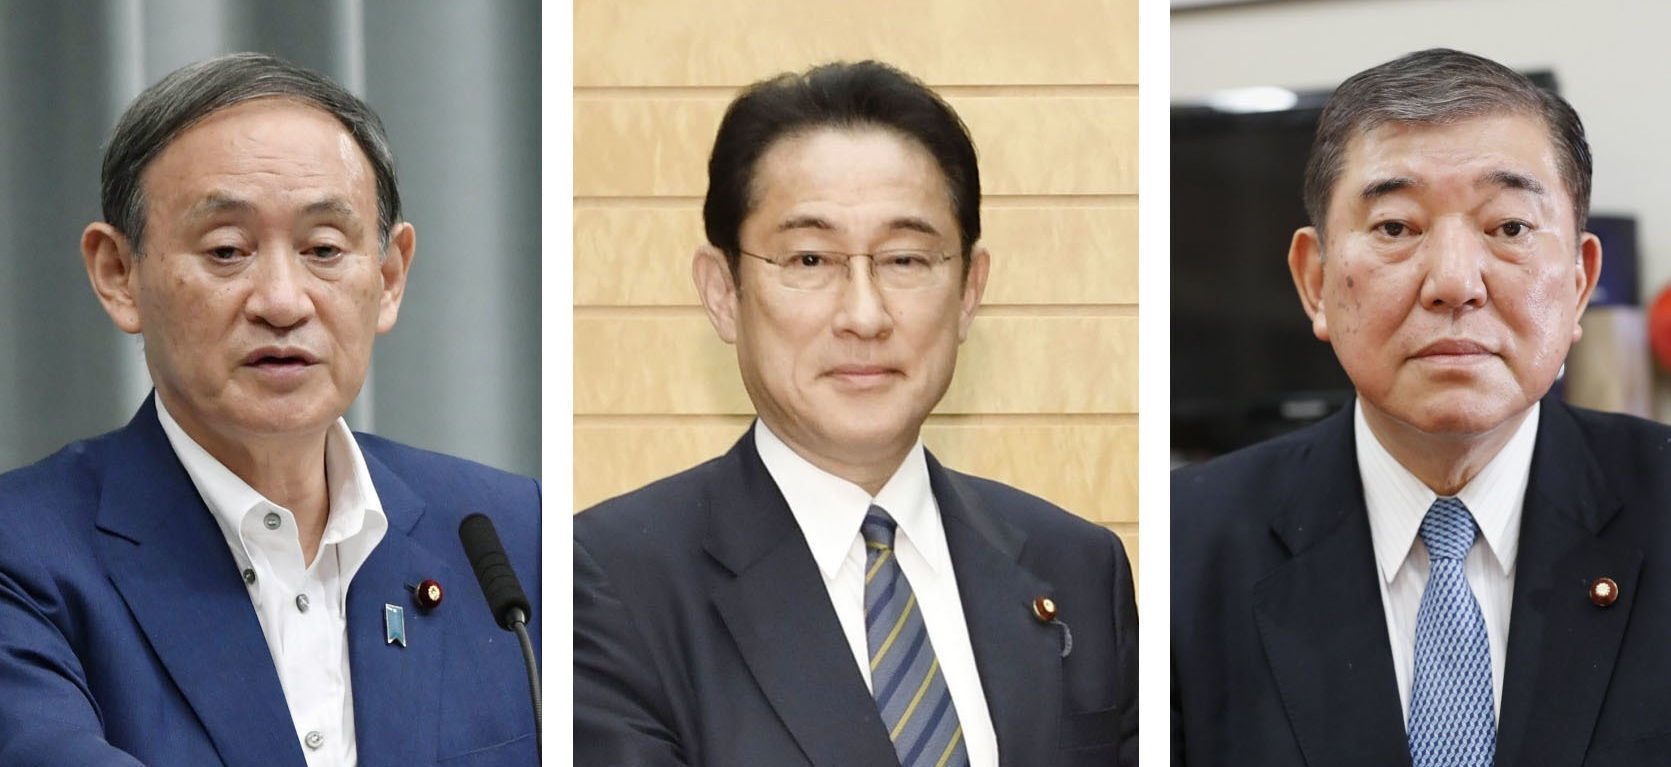 أعلن يوشيهيدي سوجا وفوميو كيشيدا وشيجيرو إيشيبا عن ترشحهم لانتخابات قيادة الحزب الليبرالي الديمقراطي الحاكم في اليابان.